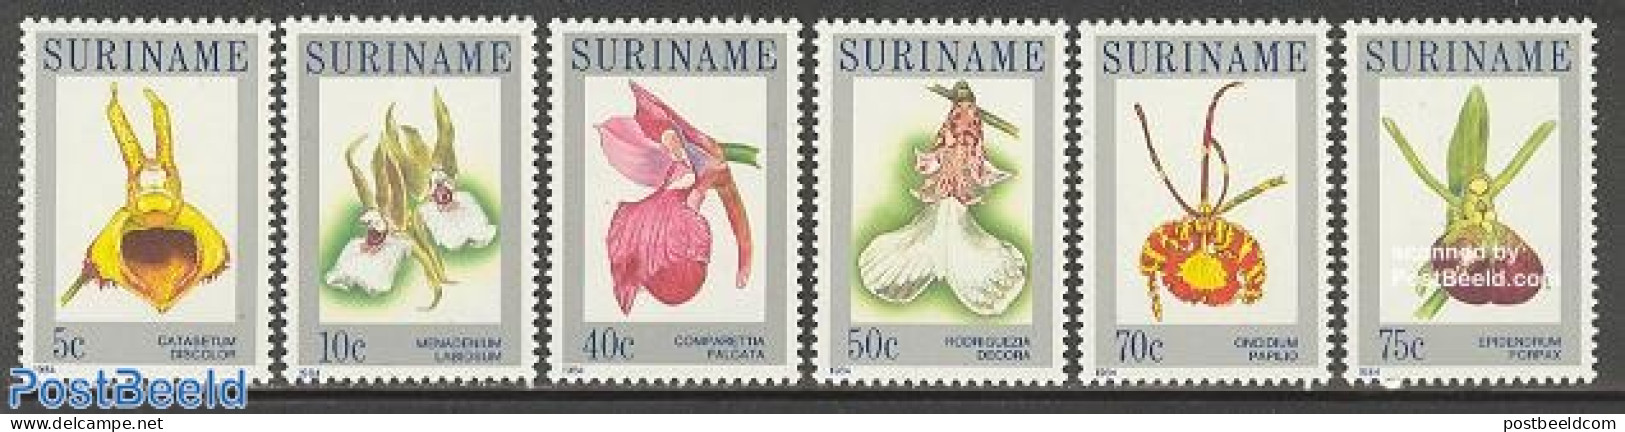 Suriname, Republic 1984 Orchids 6v, Mint NH, Nature - Flowers & Plants - Orchids - Suriname